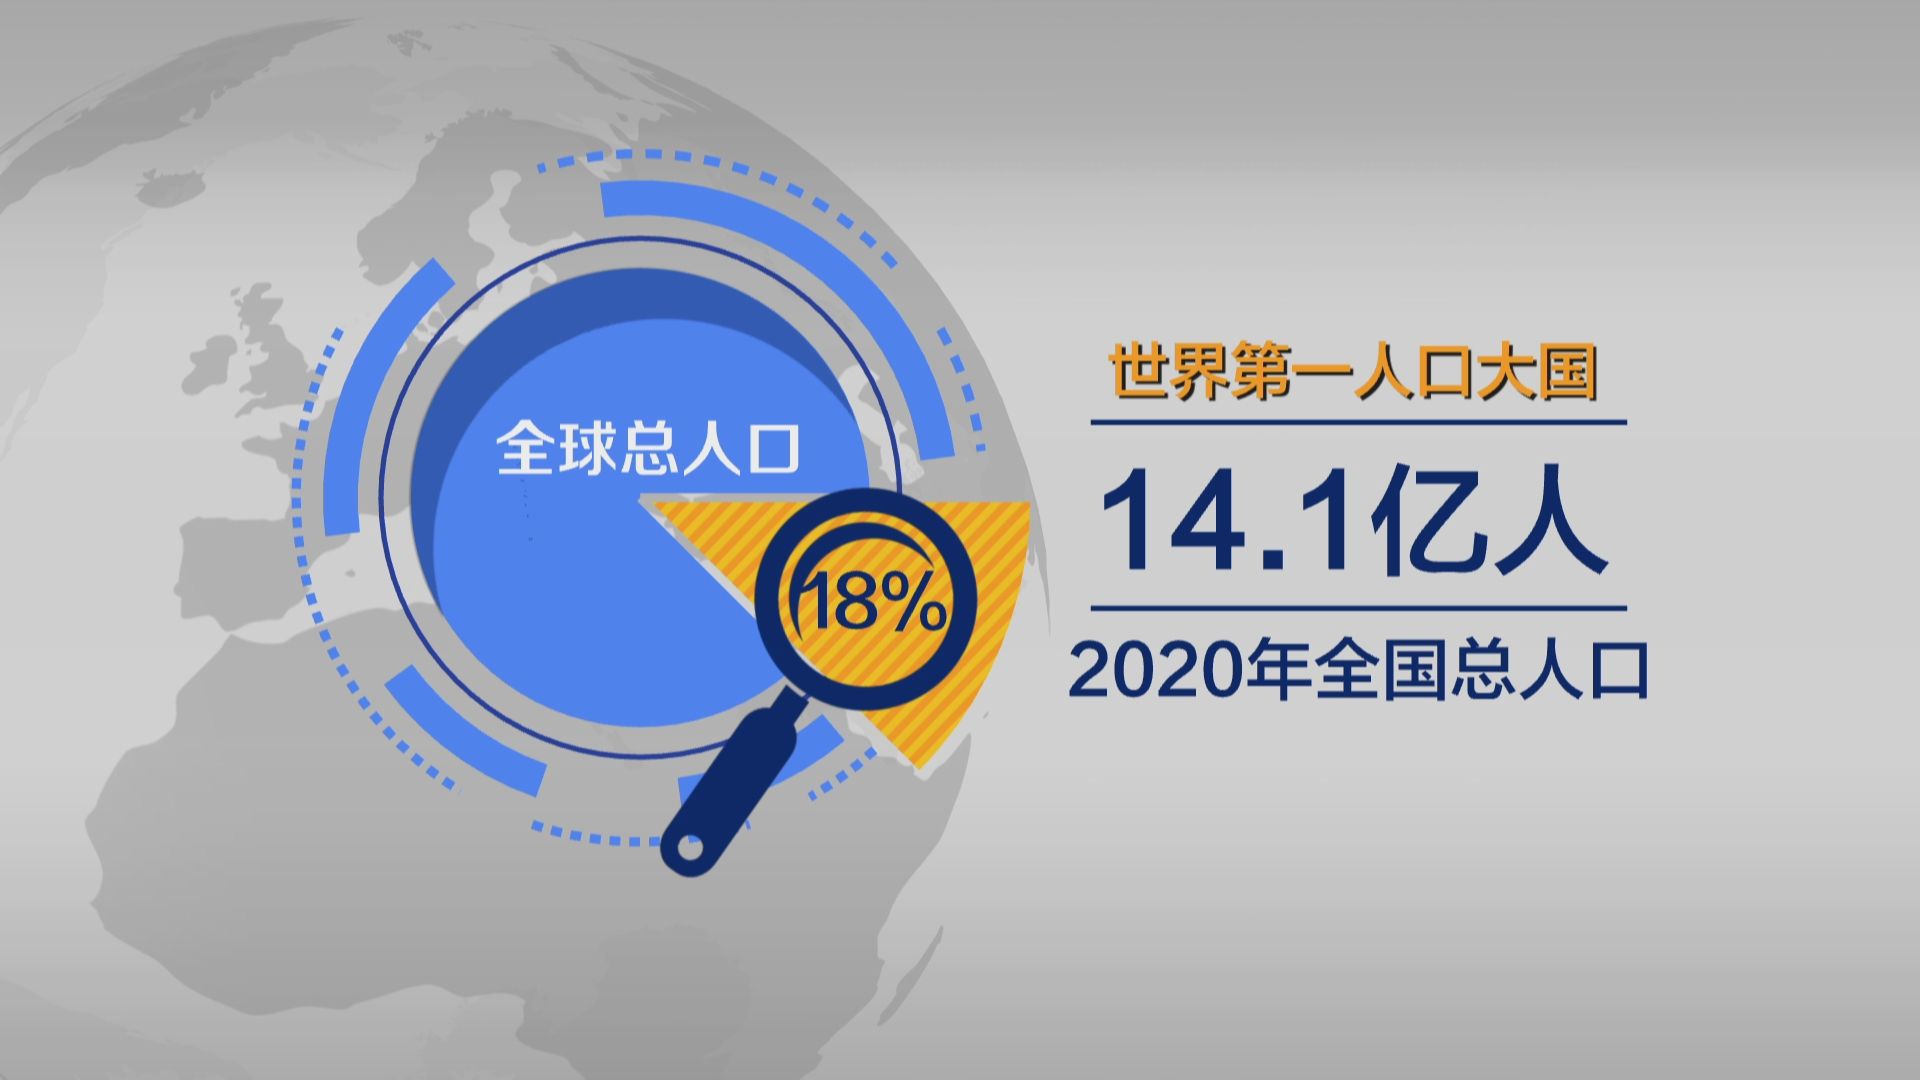 全国人口总数超过14亿中国仍是世界第一人口大国